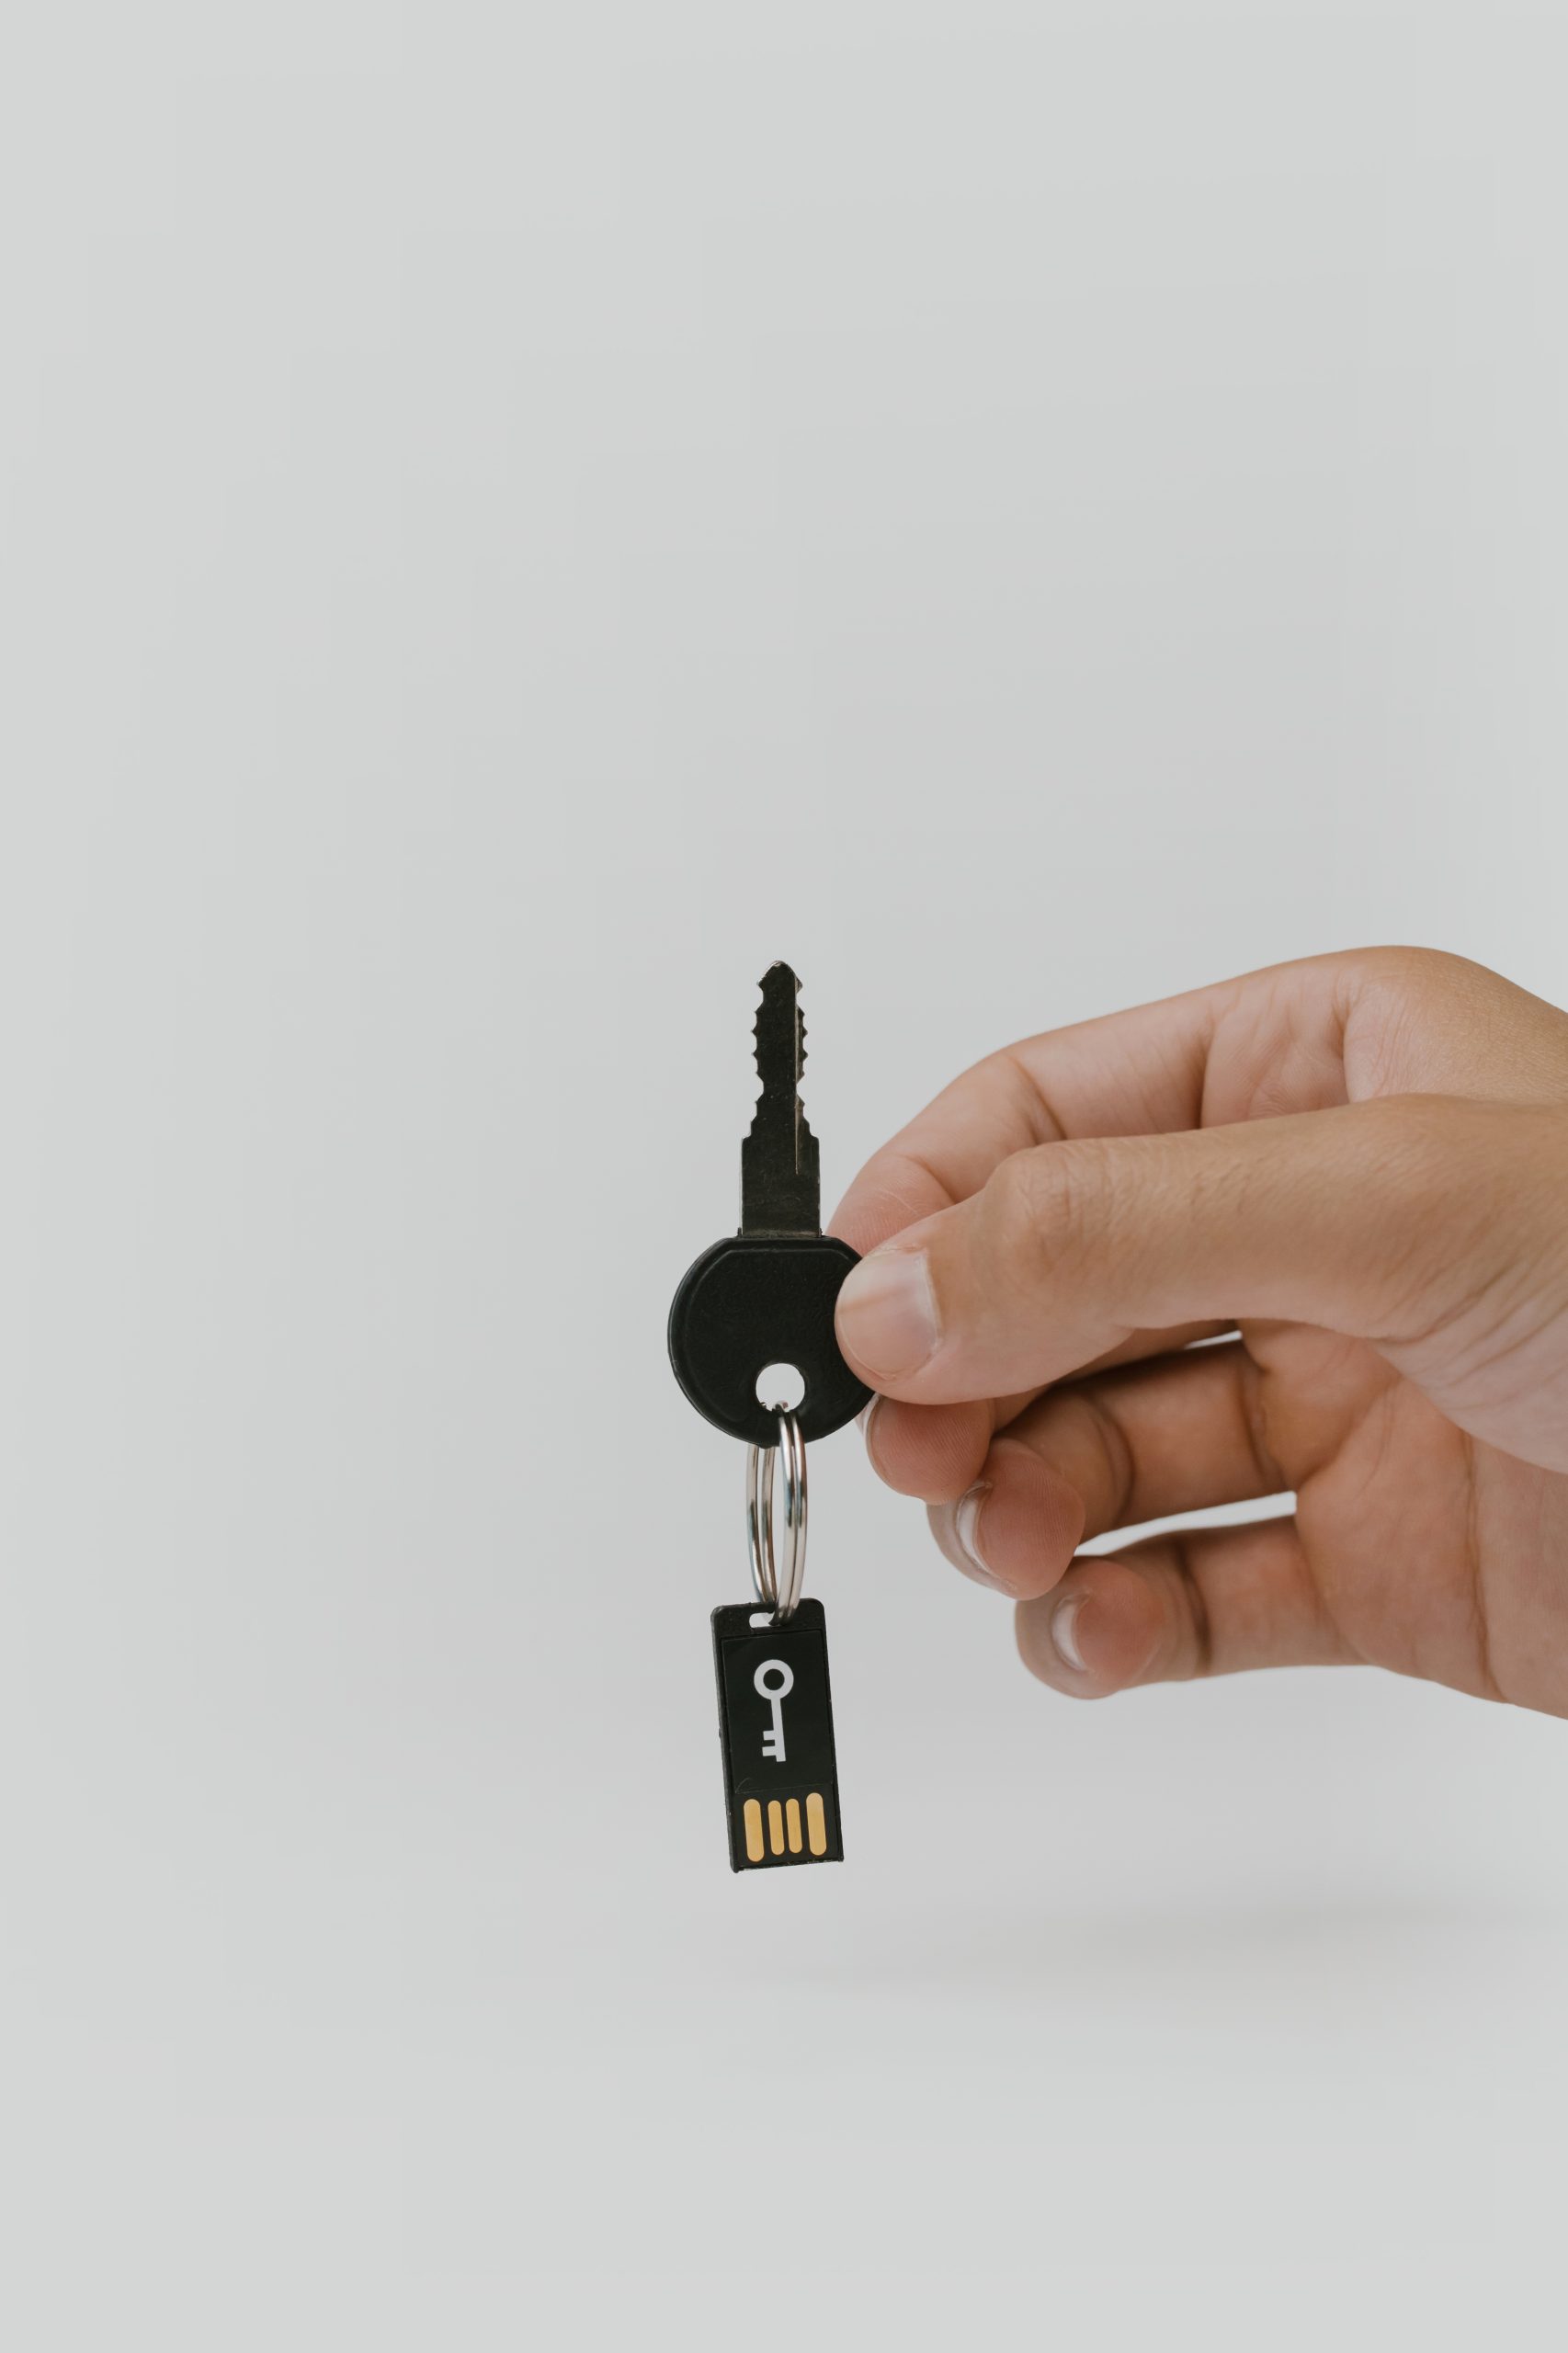 Comment récupérer les données d’une clé USB endommagée gratuitement ?